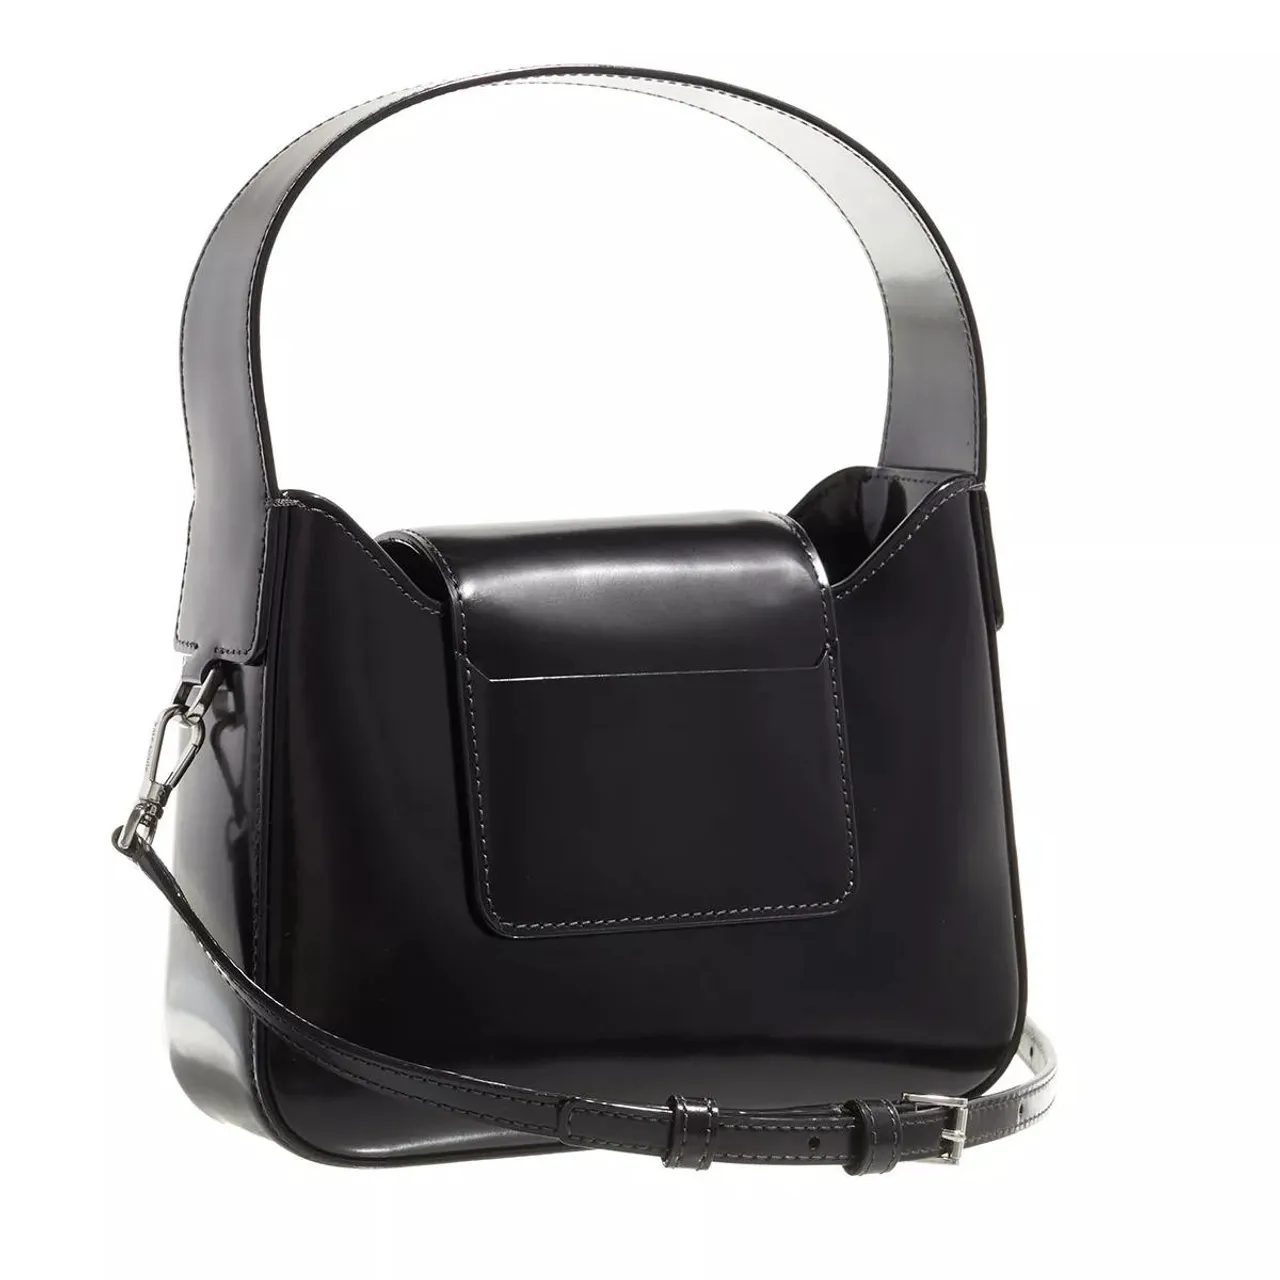 Kate Spade New York Hobo Bags - The Original Bag Icon Spazzolato Mini Hobo Bag - black - Hobo Bags for ladies